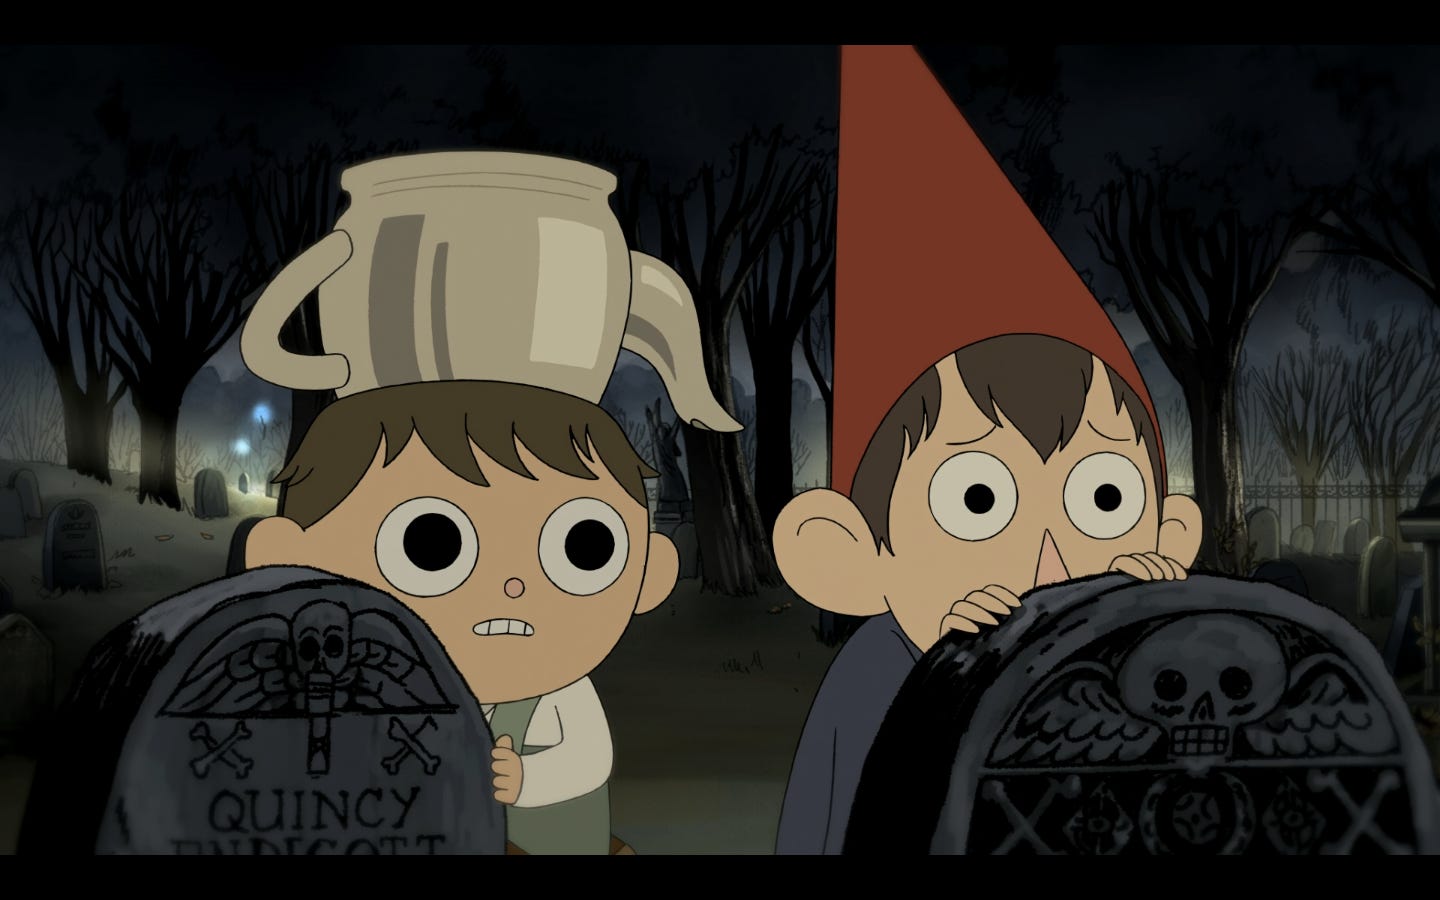 Deux garçons sont cachés derrières des pierres tombales, ils observent quelque chose que l'on ne voit pas avec un air craintif. Le plus âgé porte un chapeau pointu, le plus jeune porte une théière posée à l'envers sur la tête.